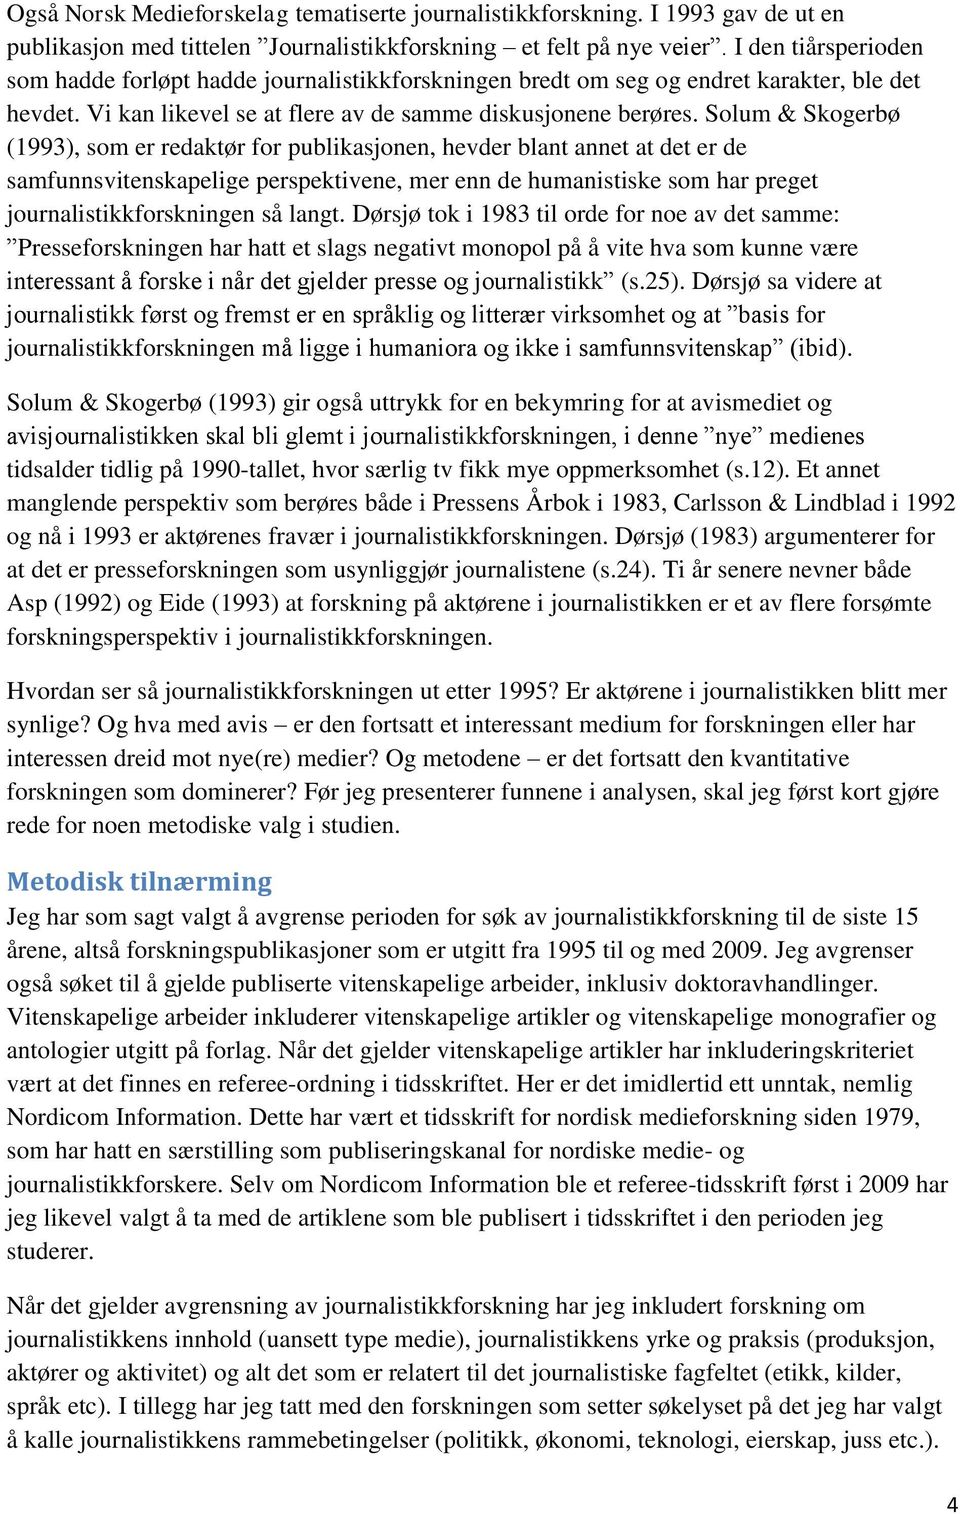 Solum & Skogerbø (1993), som er redaktør for publikasjonen, hevder blant annet at det er de samfunnsvitenskapelige perspektivene, mer enn de humanistiske som har preget journalistikkforskningen så